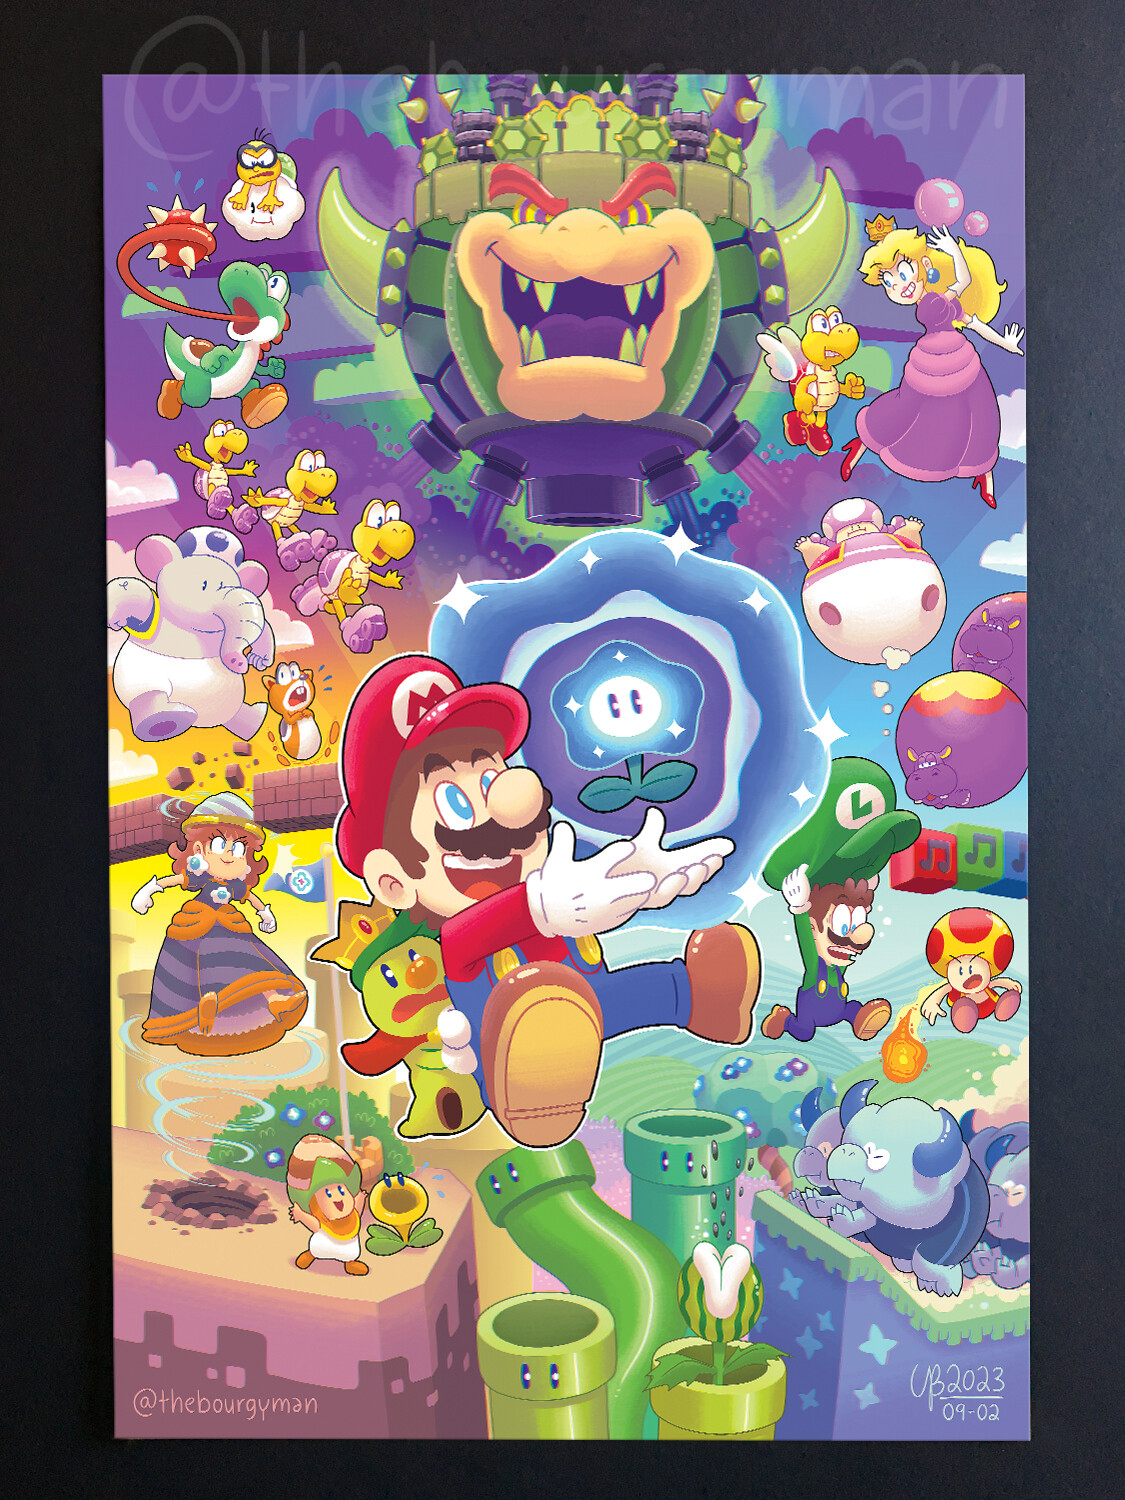 Wonderful! (Super Mario Wonder) 12 x 18" poster/affiche